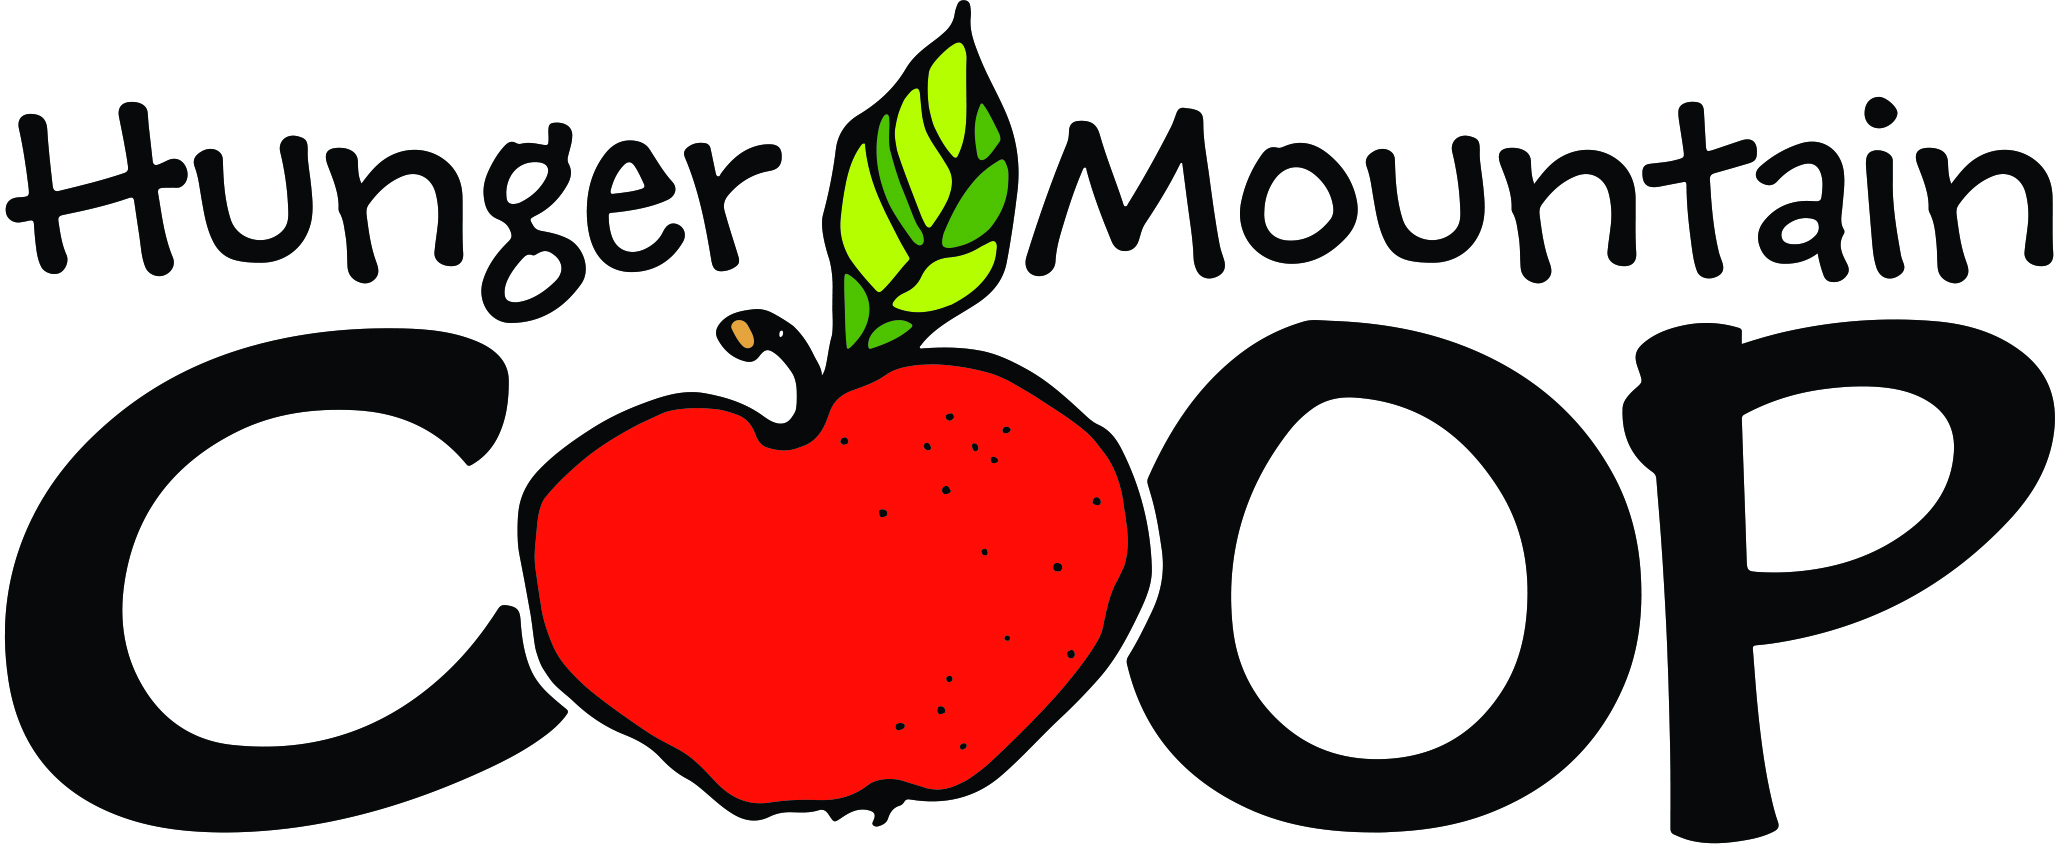 Hunger Mountain Coop Logo